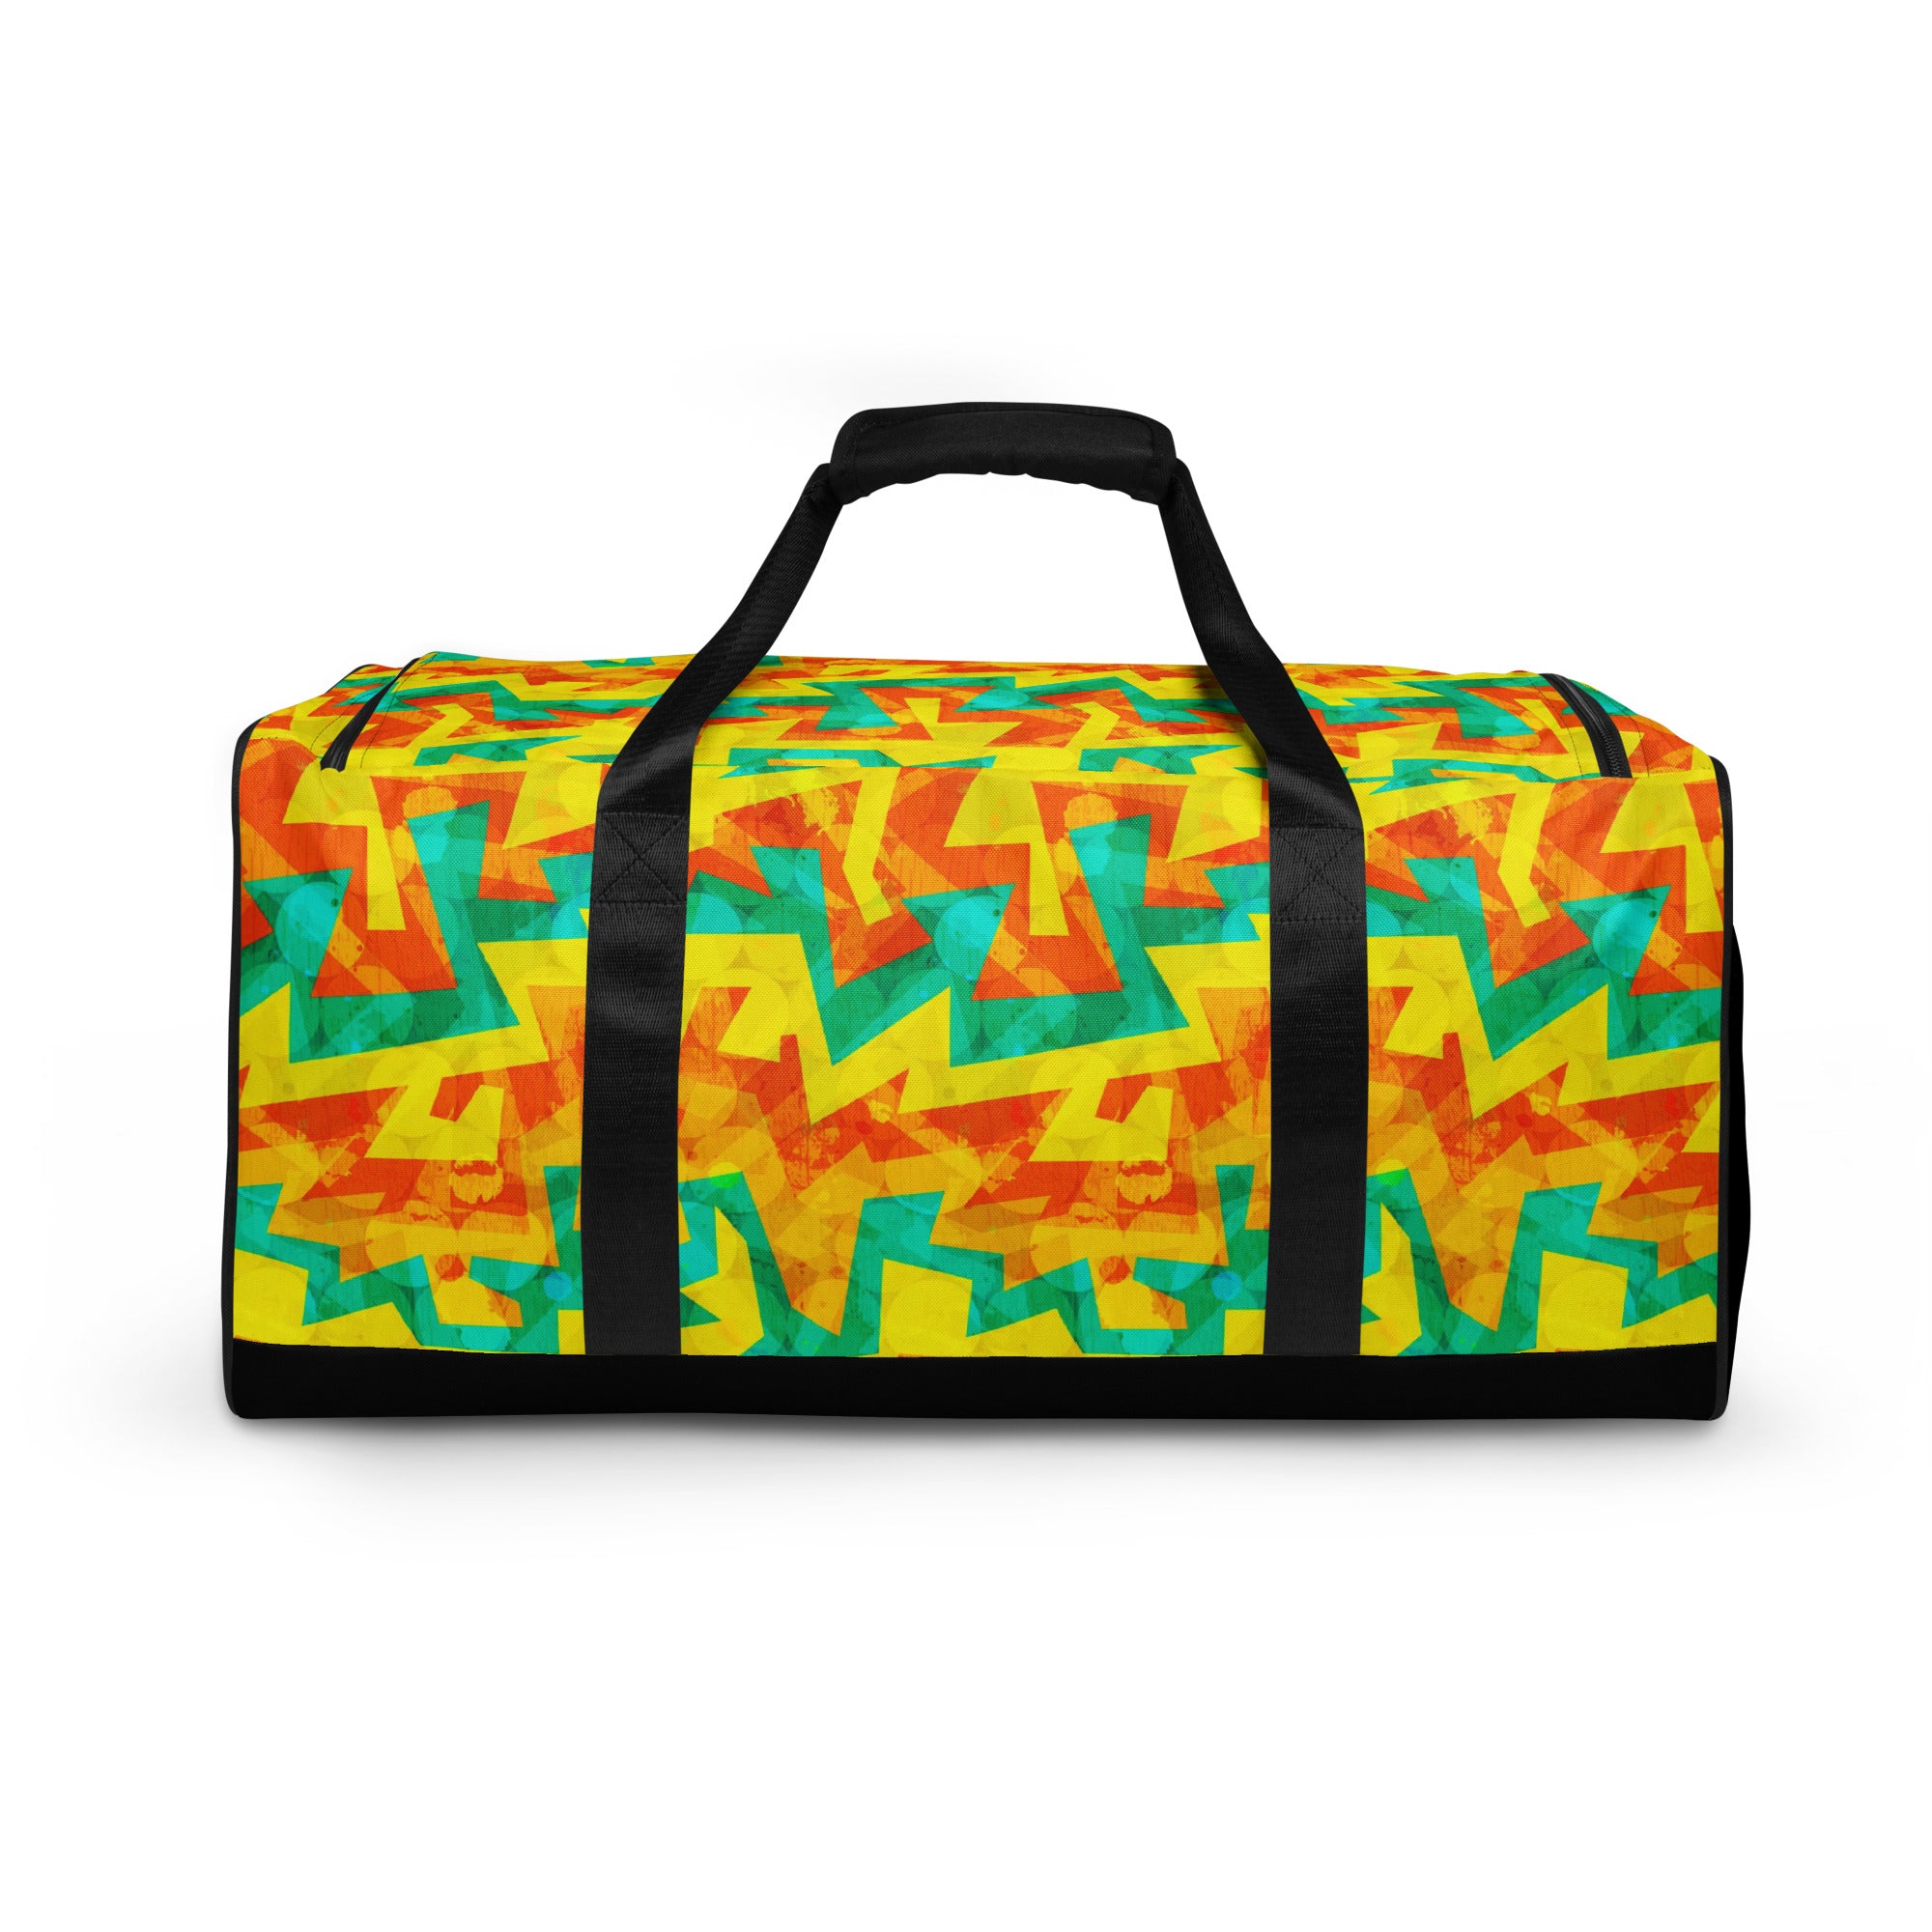 Large Printed Duffle Bag - Geometric Neon in Citrus